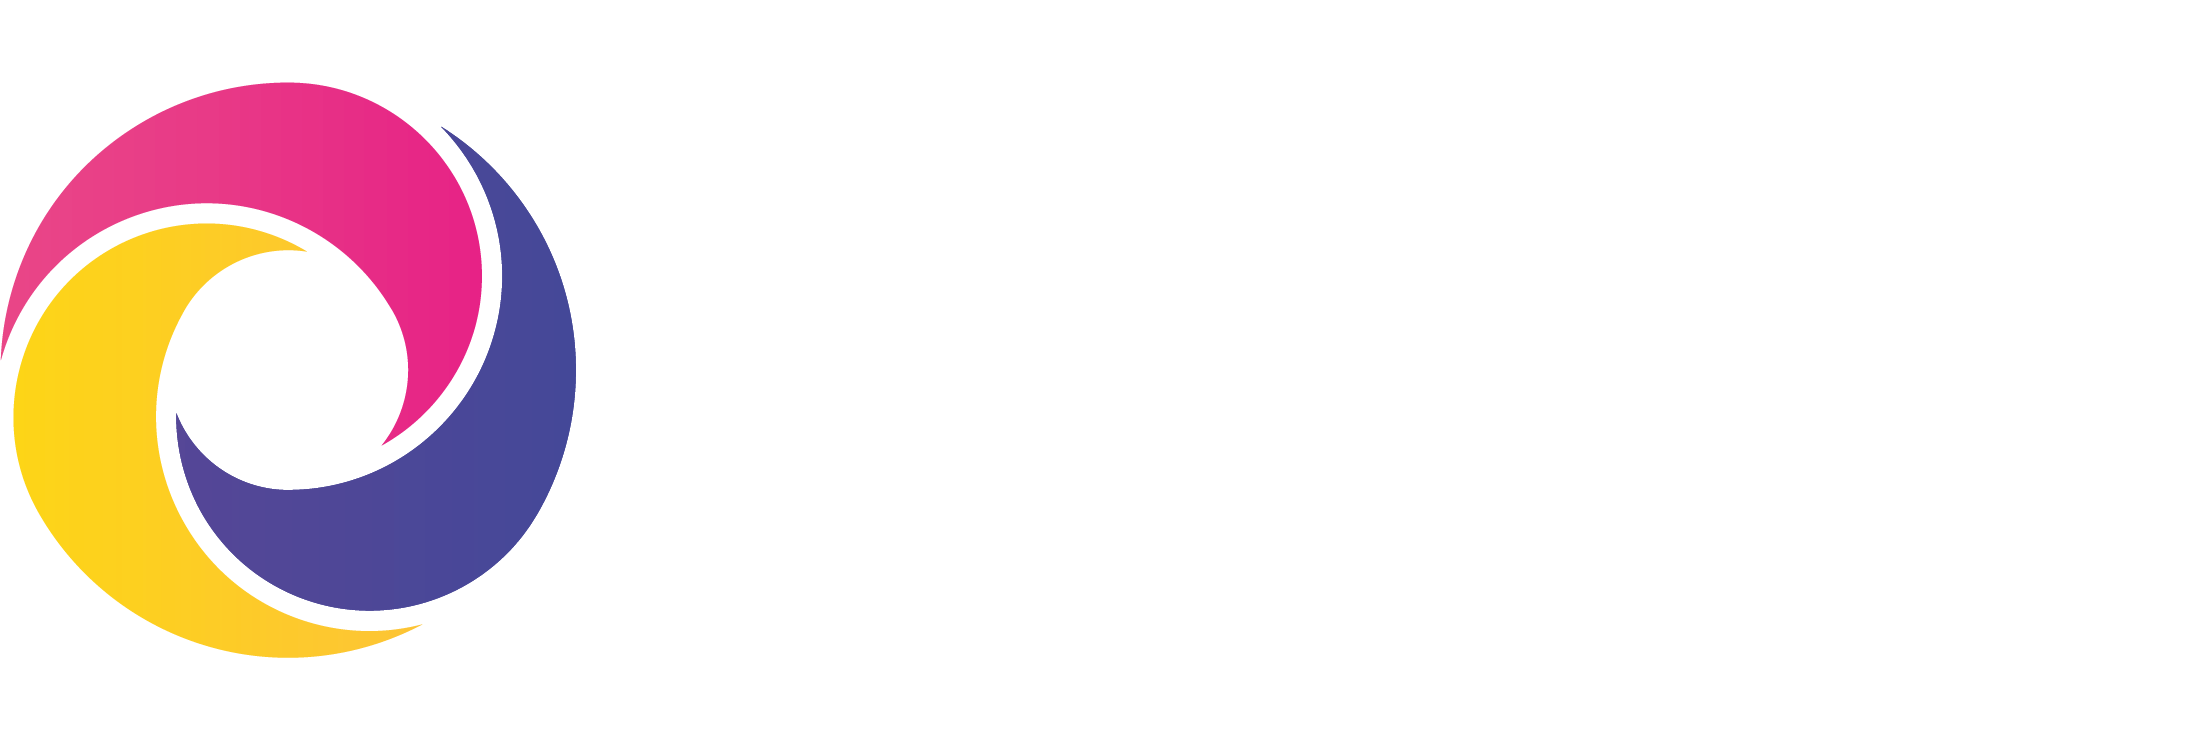 Syolo - Logo - Primary - White